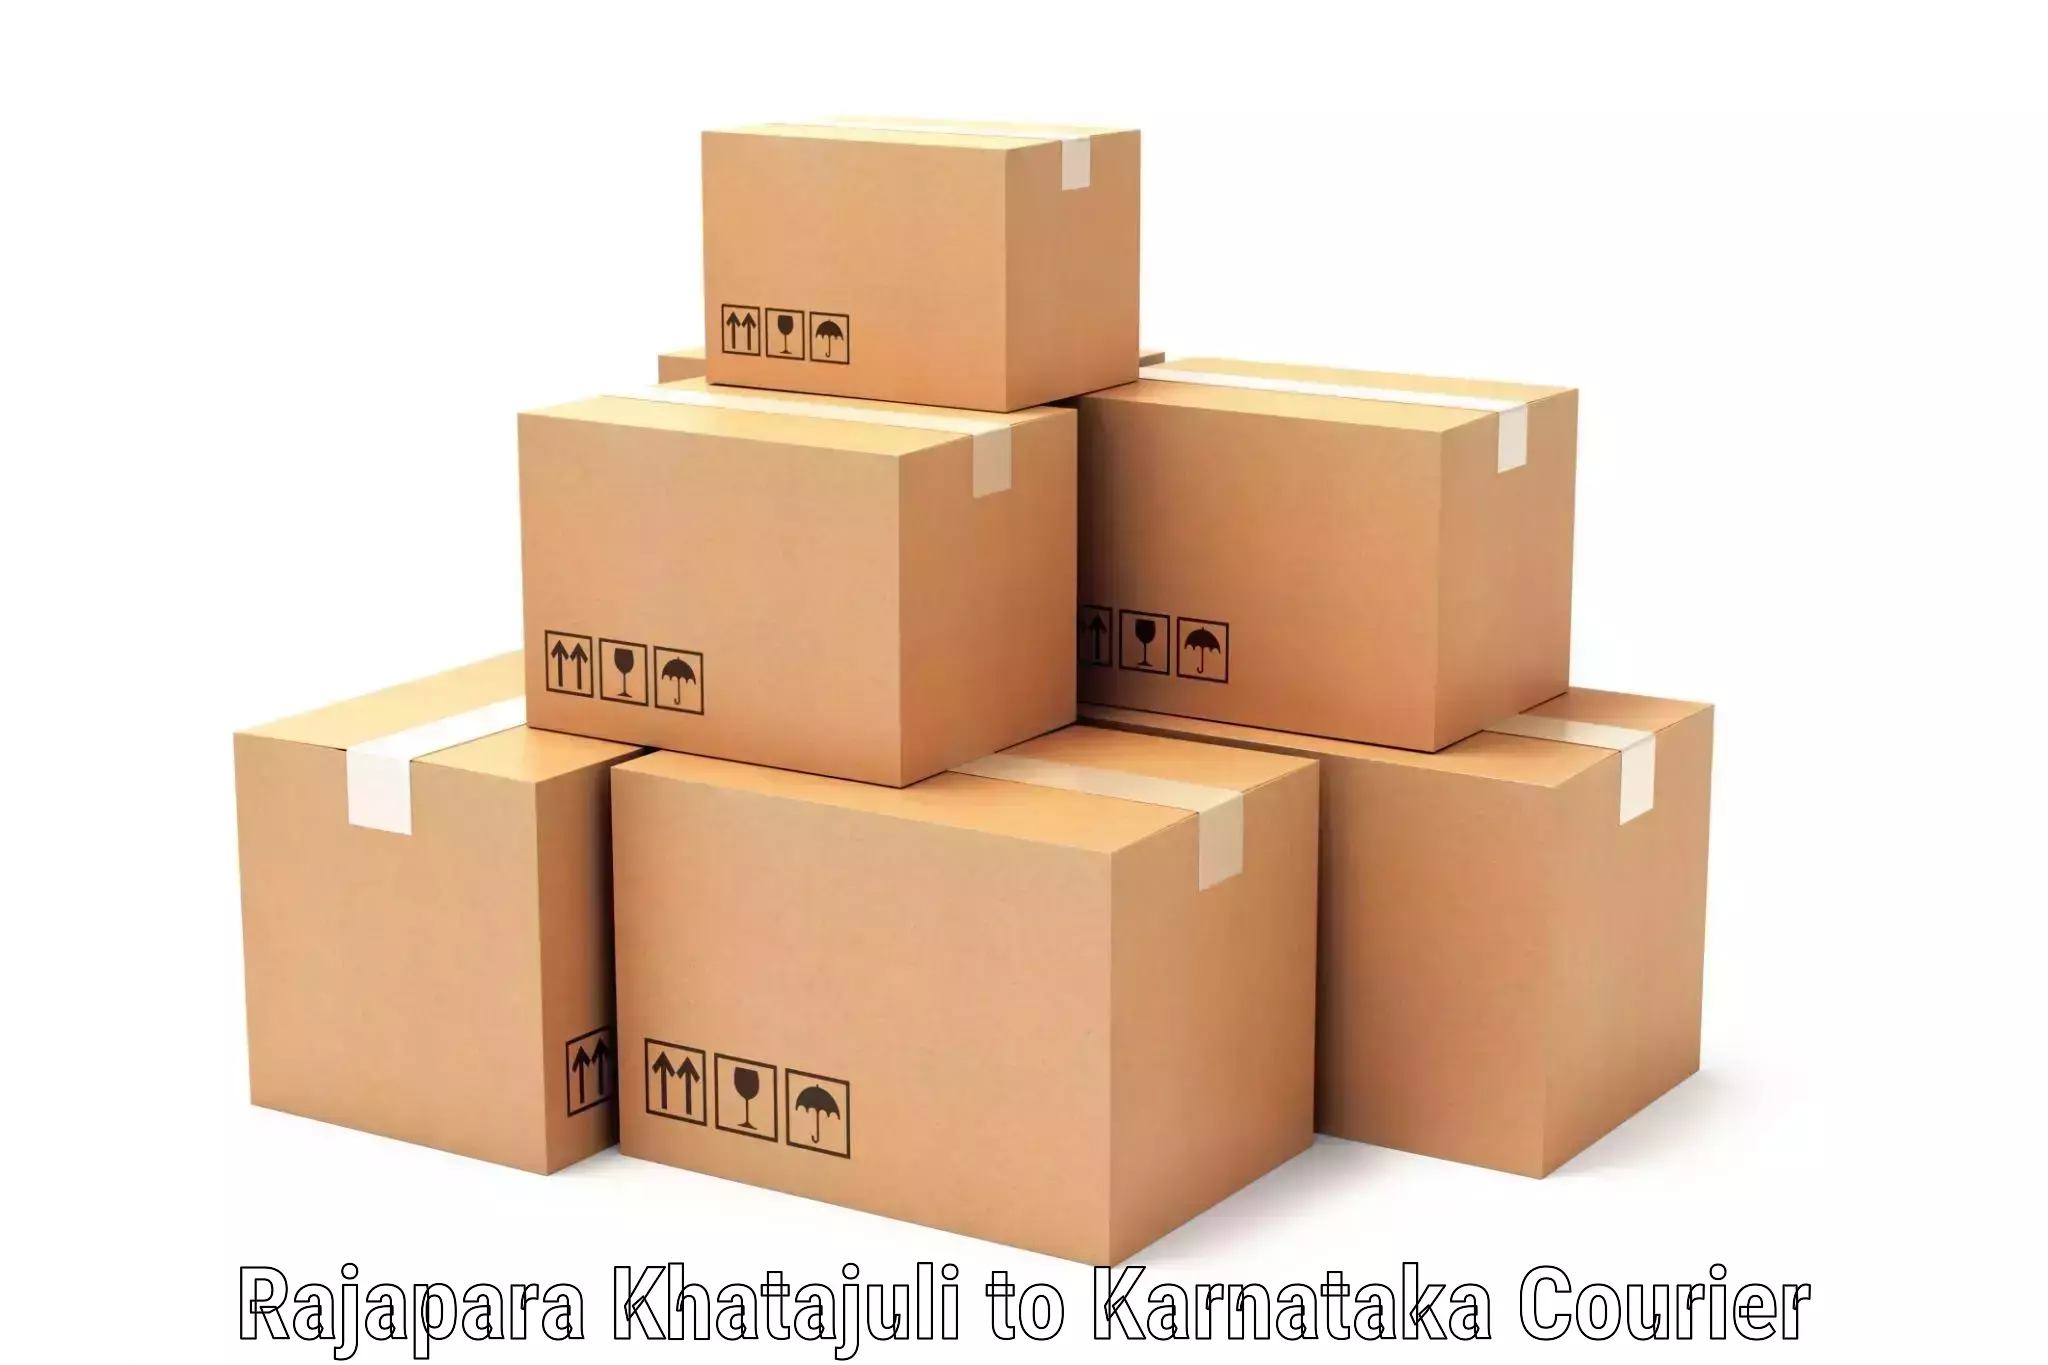 Efficient cargo handling Rajapara Khatajuli to Lingasugur